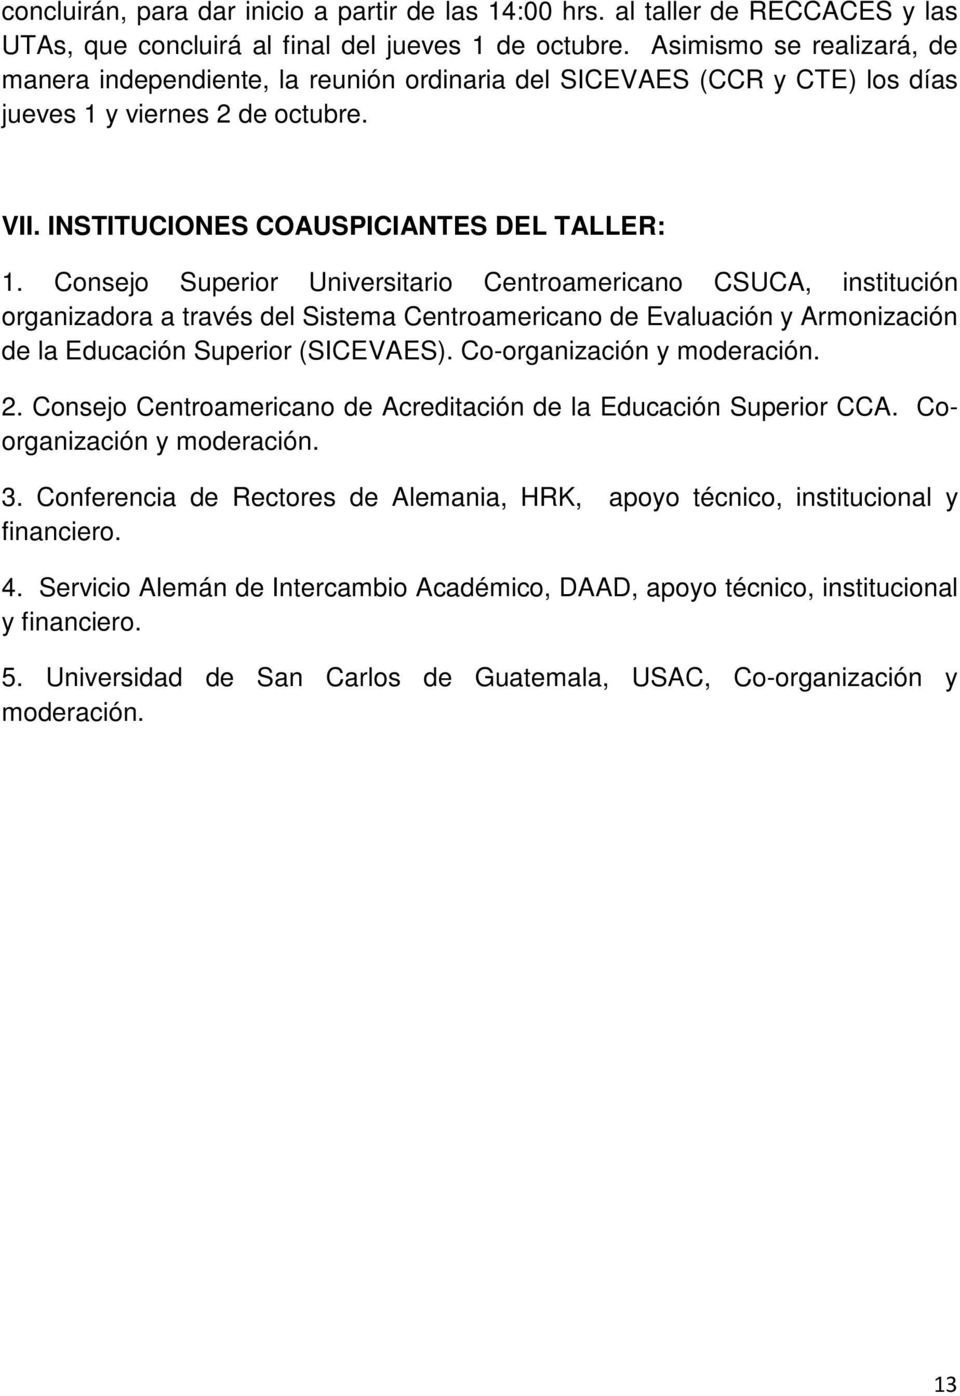 Consejo Superior Universitario Centroamericano CSUCA, institución organizadora a través del Sistema Centroamericano de Evaluación y Armonización de la Educación Superior (SICEVAES).